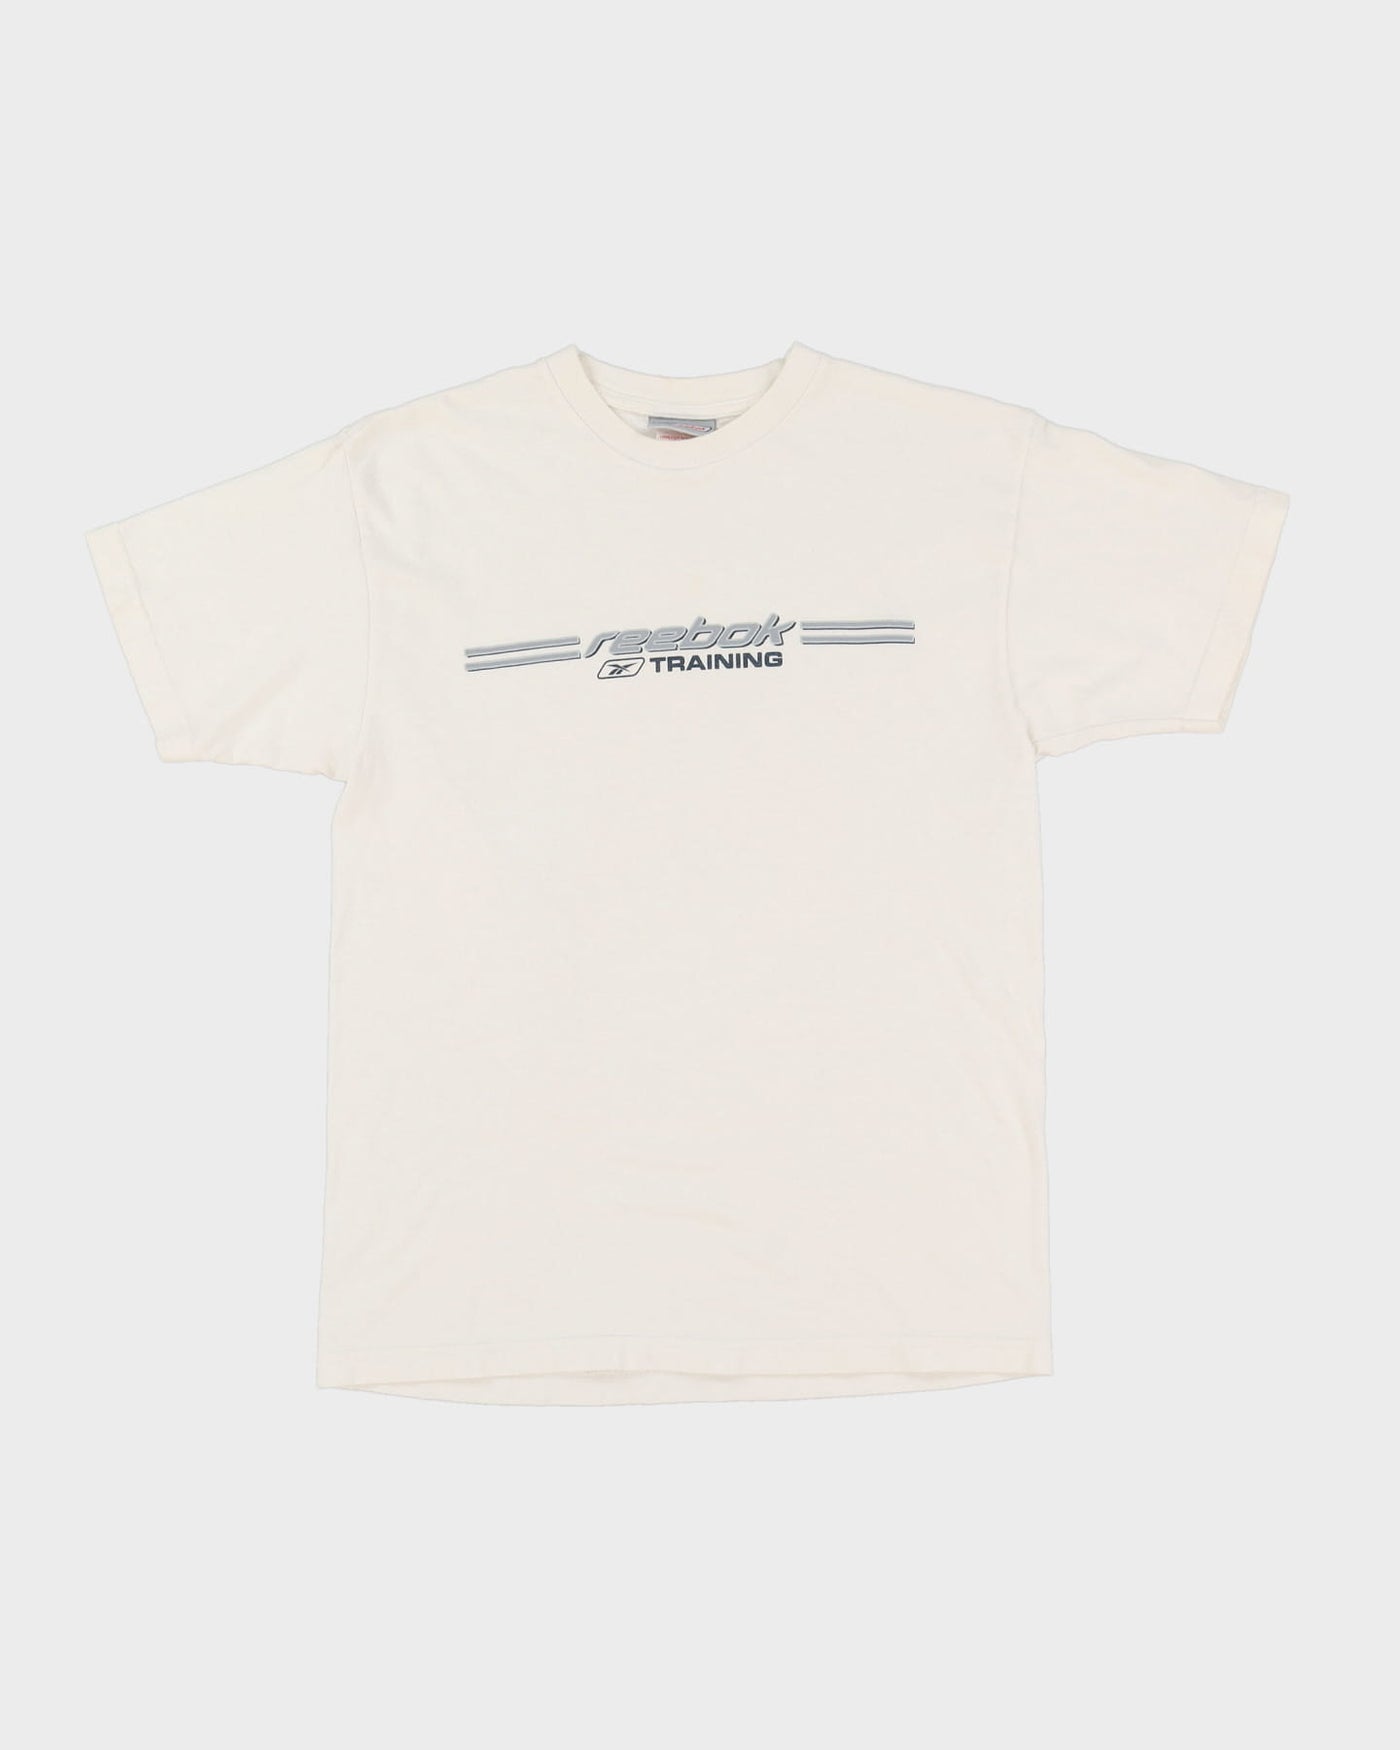 Reebok White Graphic T-Shirt - S